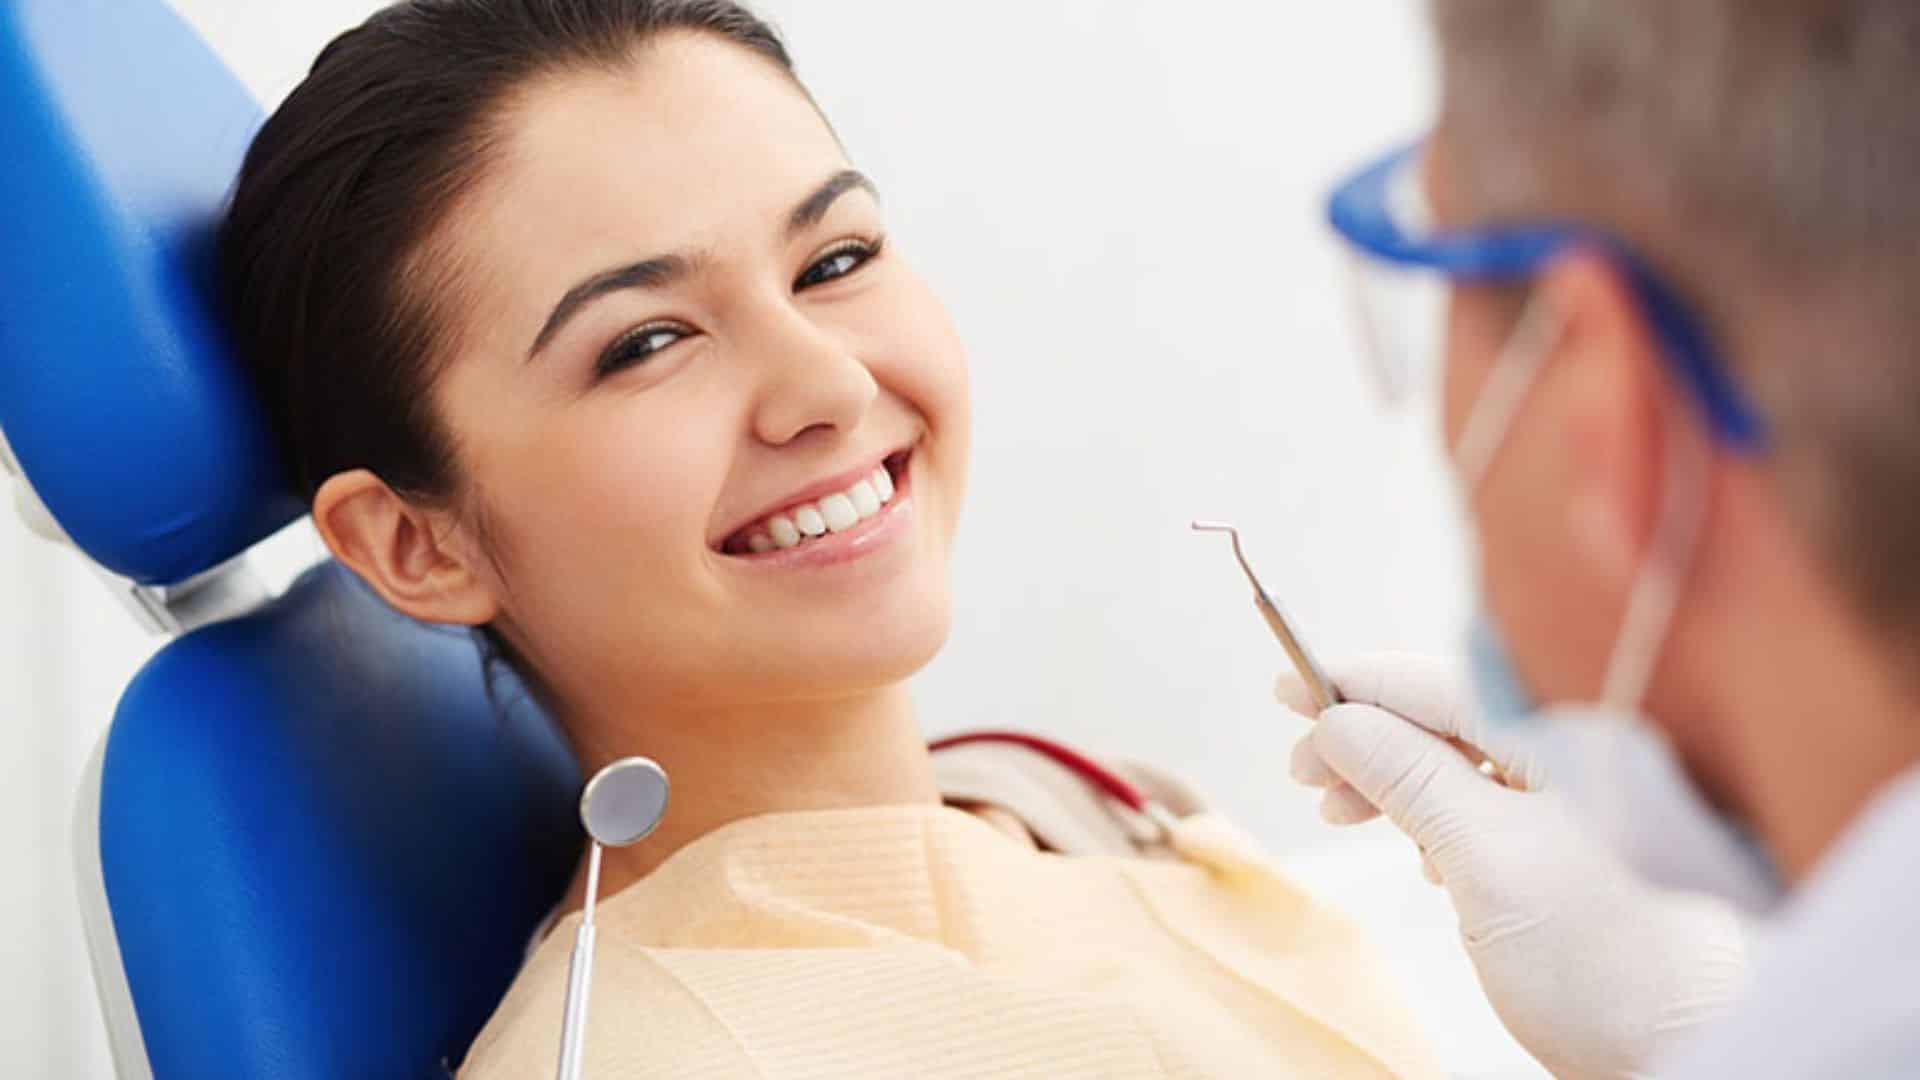 Khoa răng hàm mặt bệnh viện Đà Nẵng - Bệnh viện răng hàm mặt Đà Nẵng chất lượng giá tốt